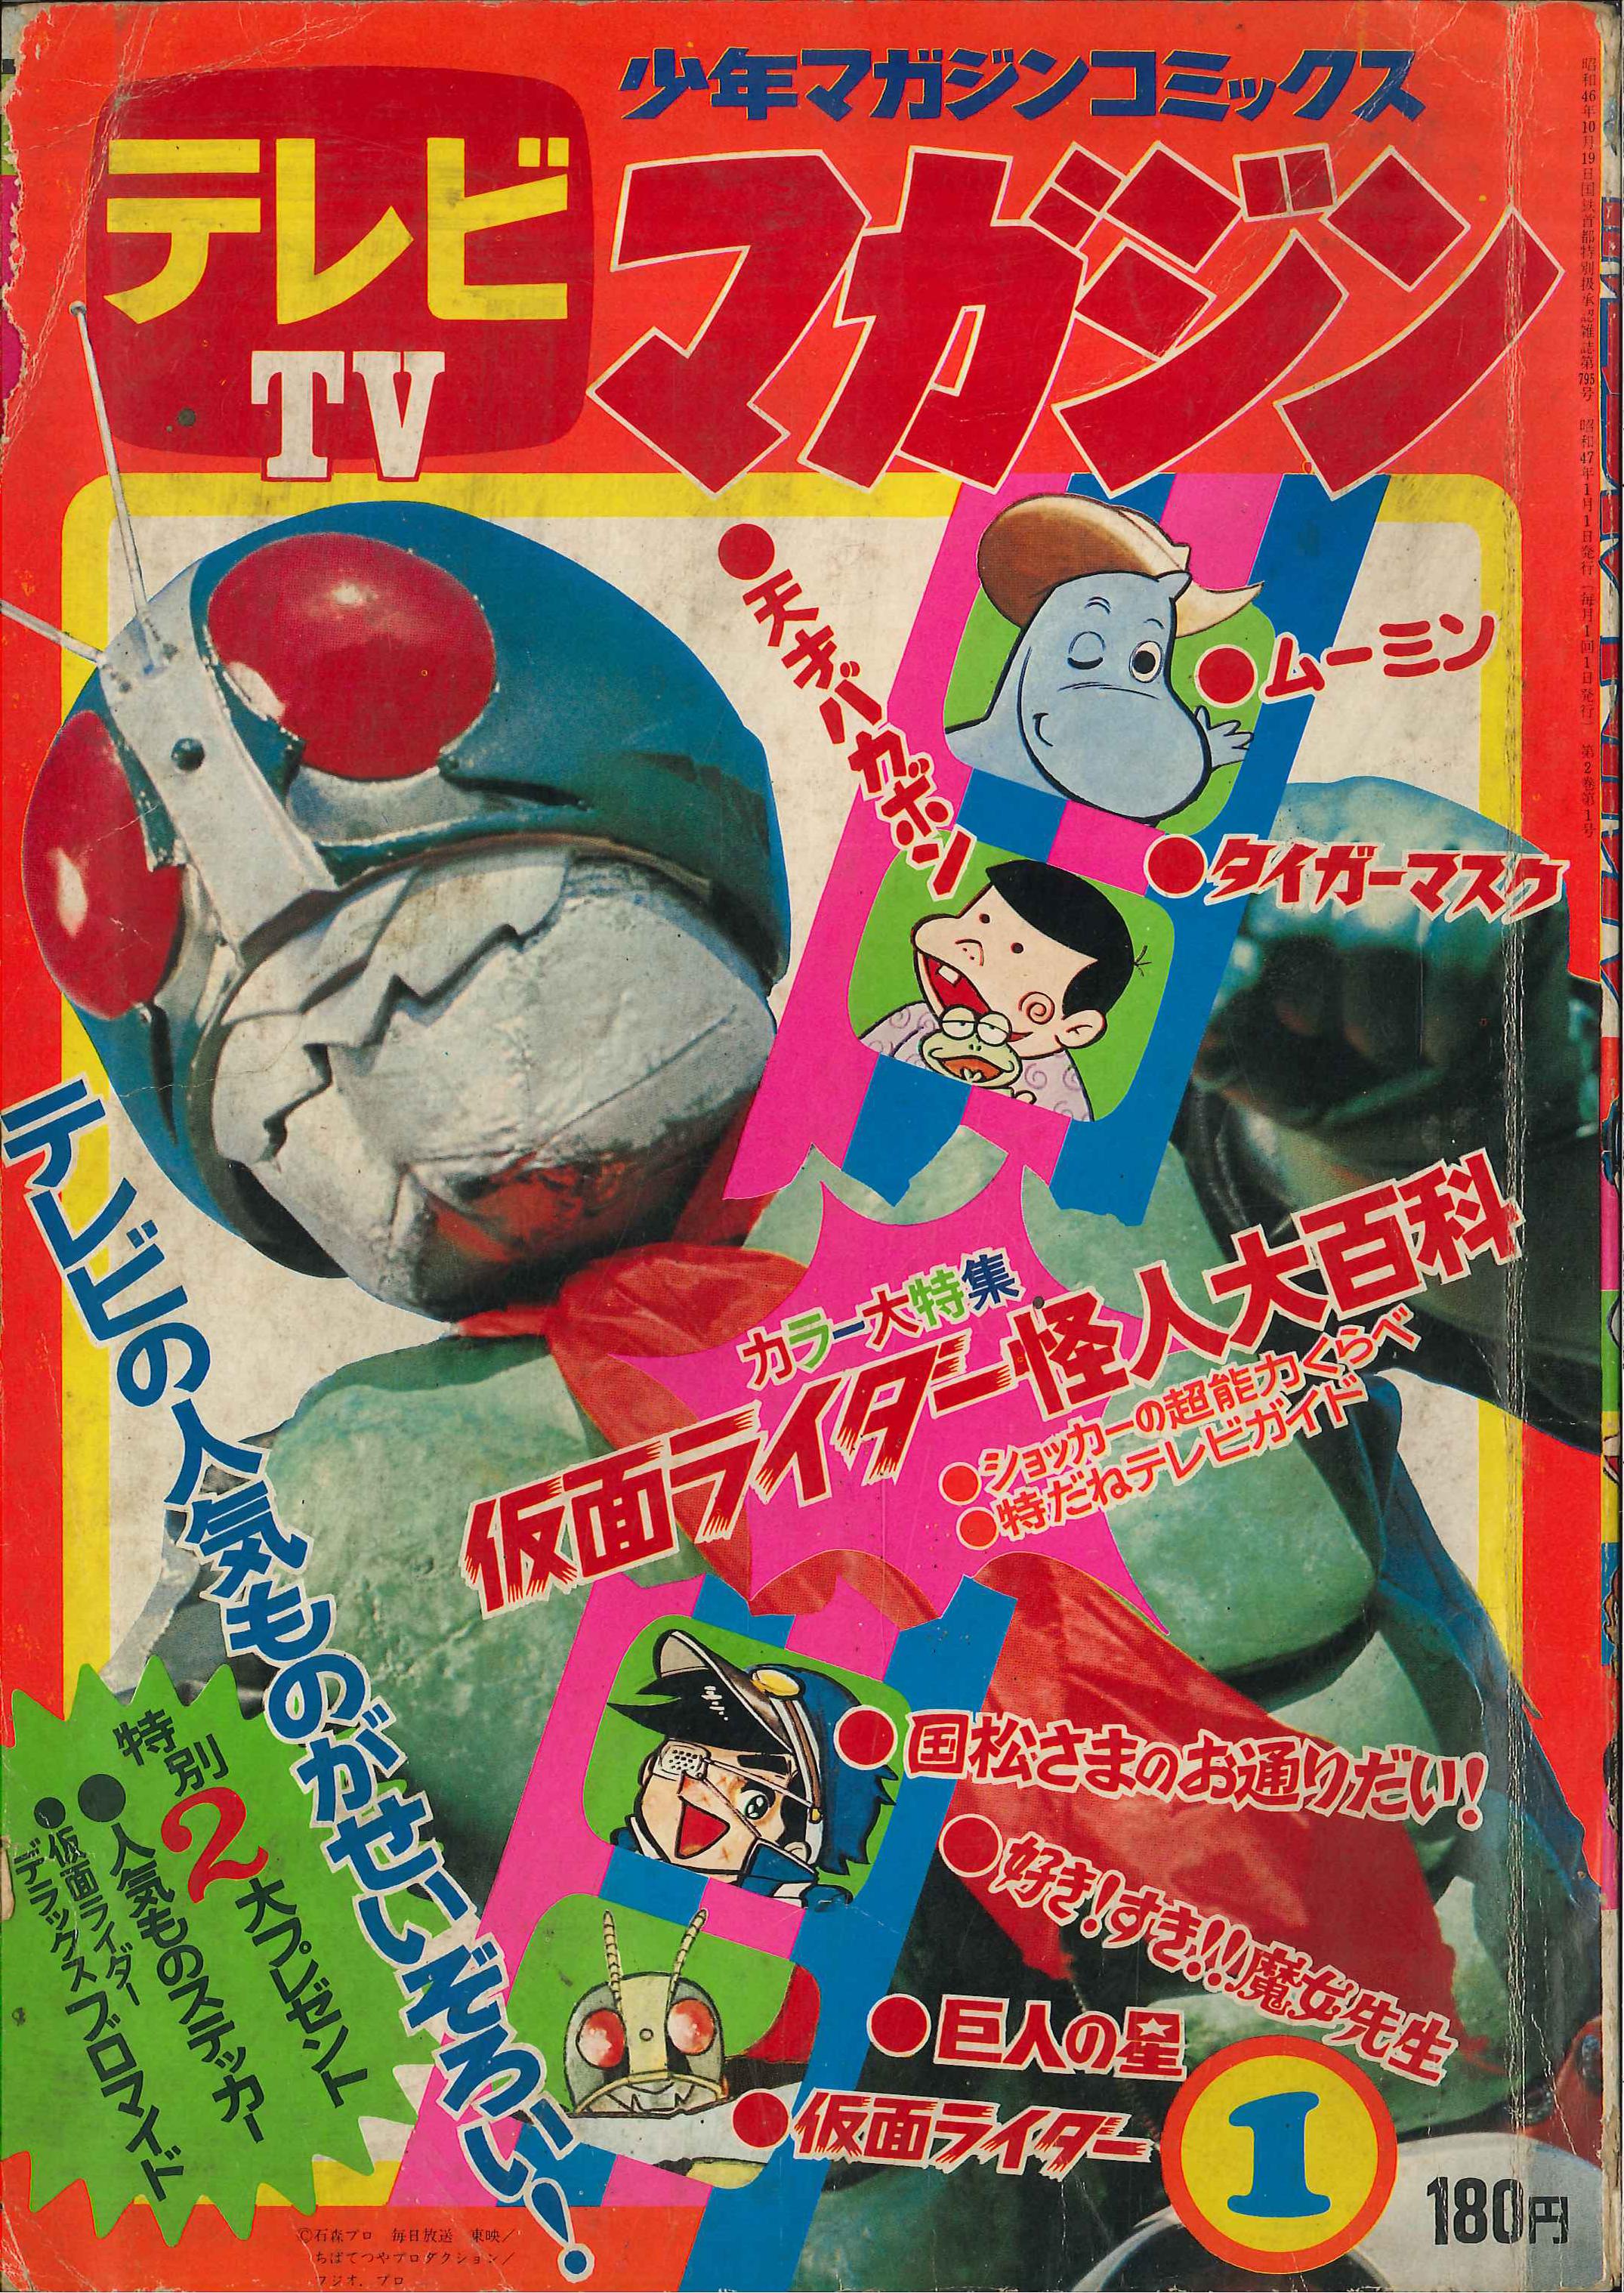 講談社 1972年(昭和47年)の漫画雑誌 『テレビマガジン 1972年(昭和47年